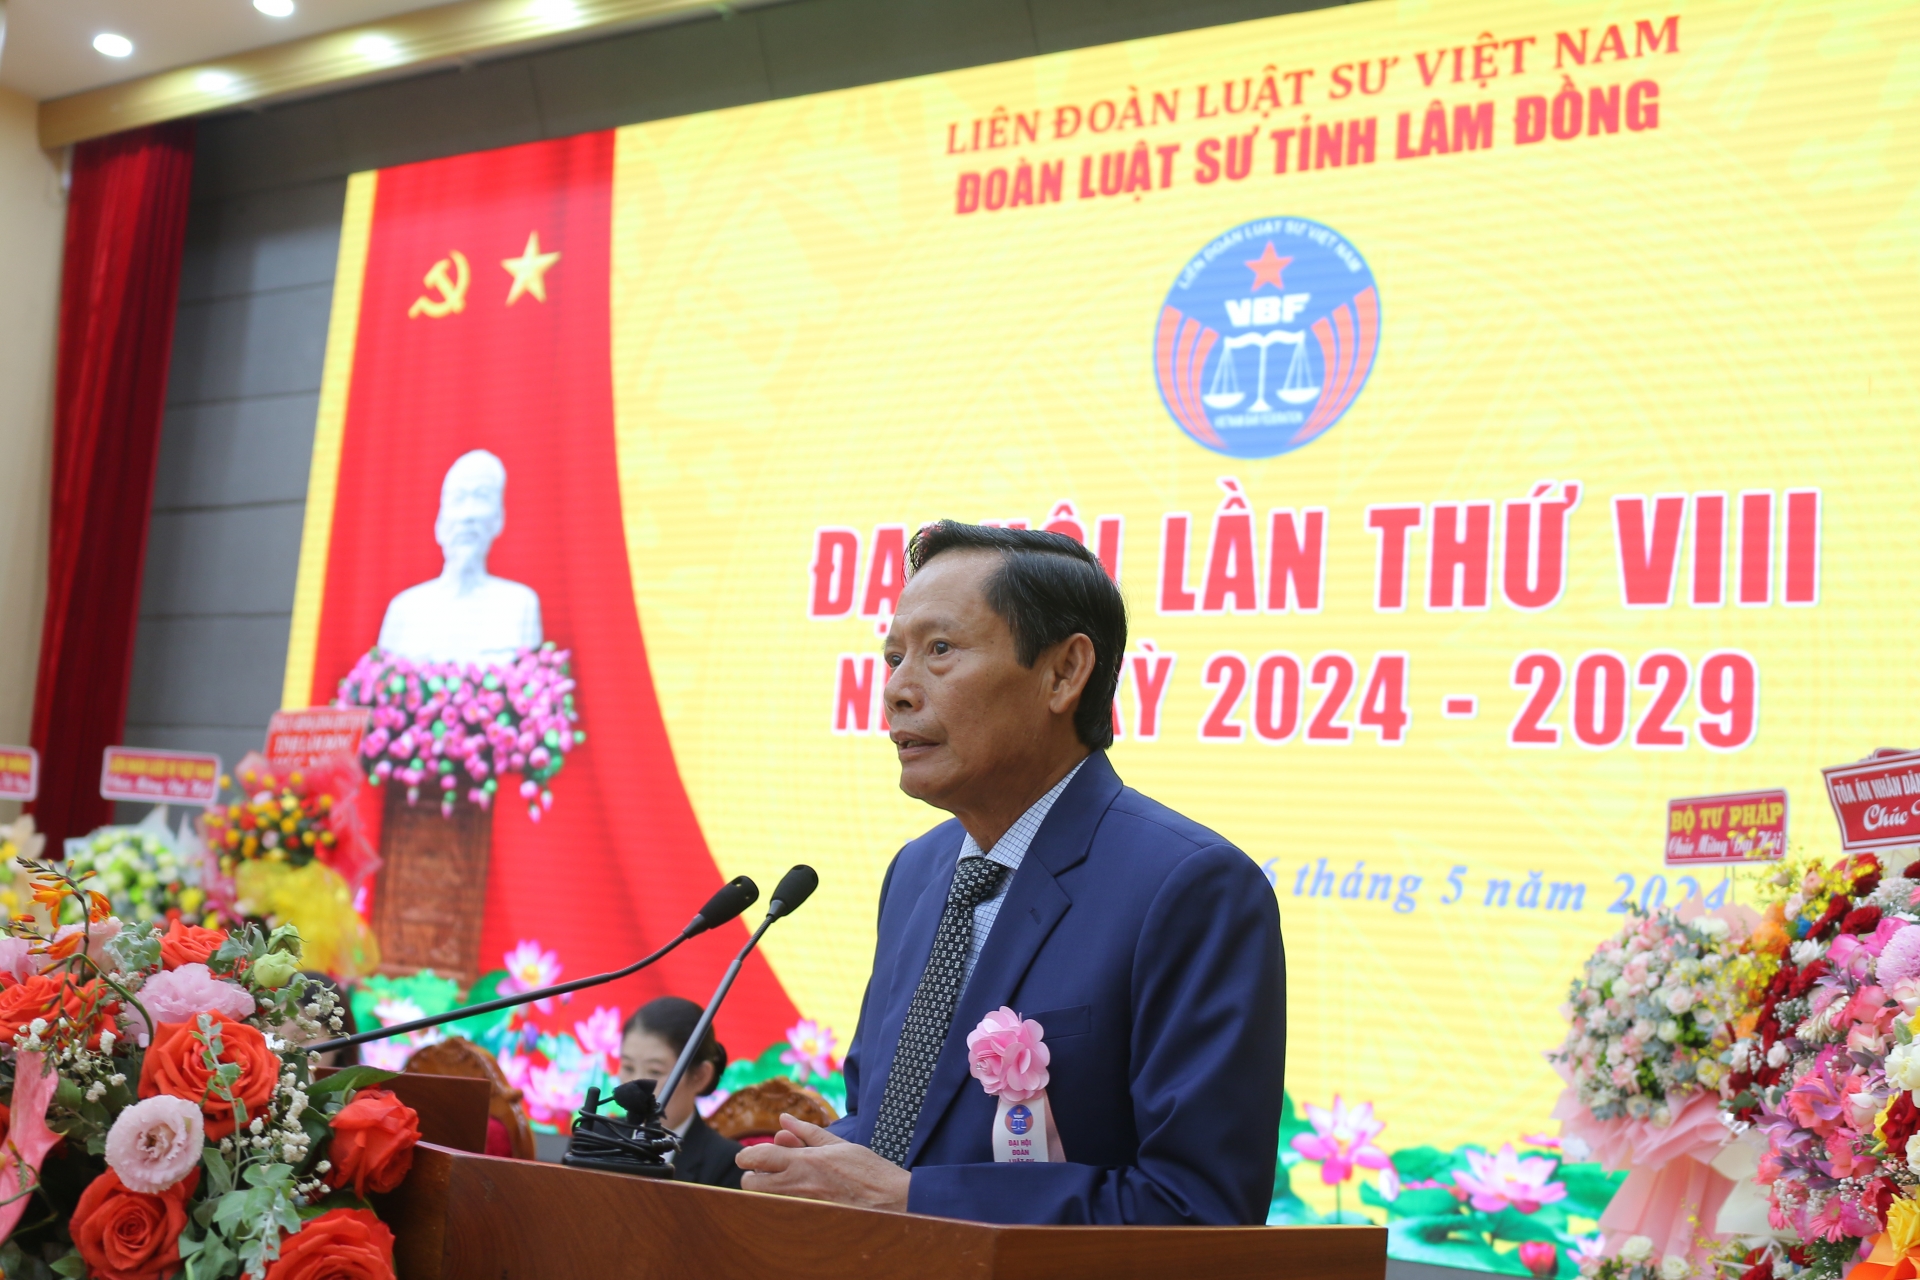 Luật sư Phan Trung Hoài – Phó Chủ tịch Liên đoàn Luật sư Việt Nam